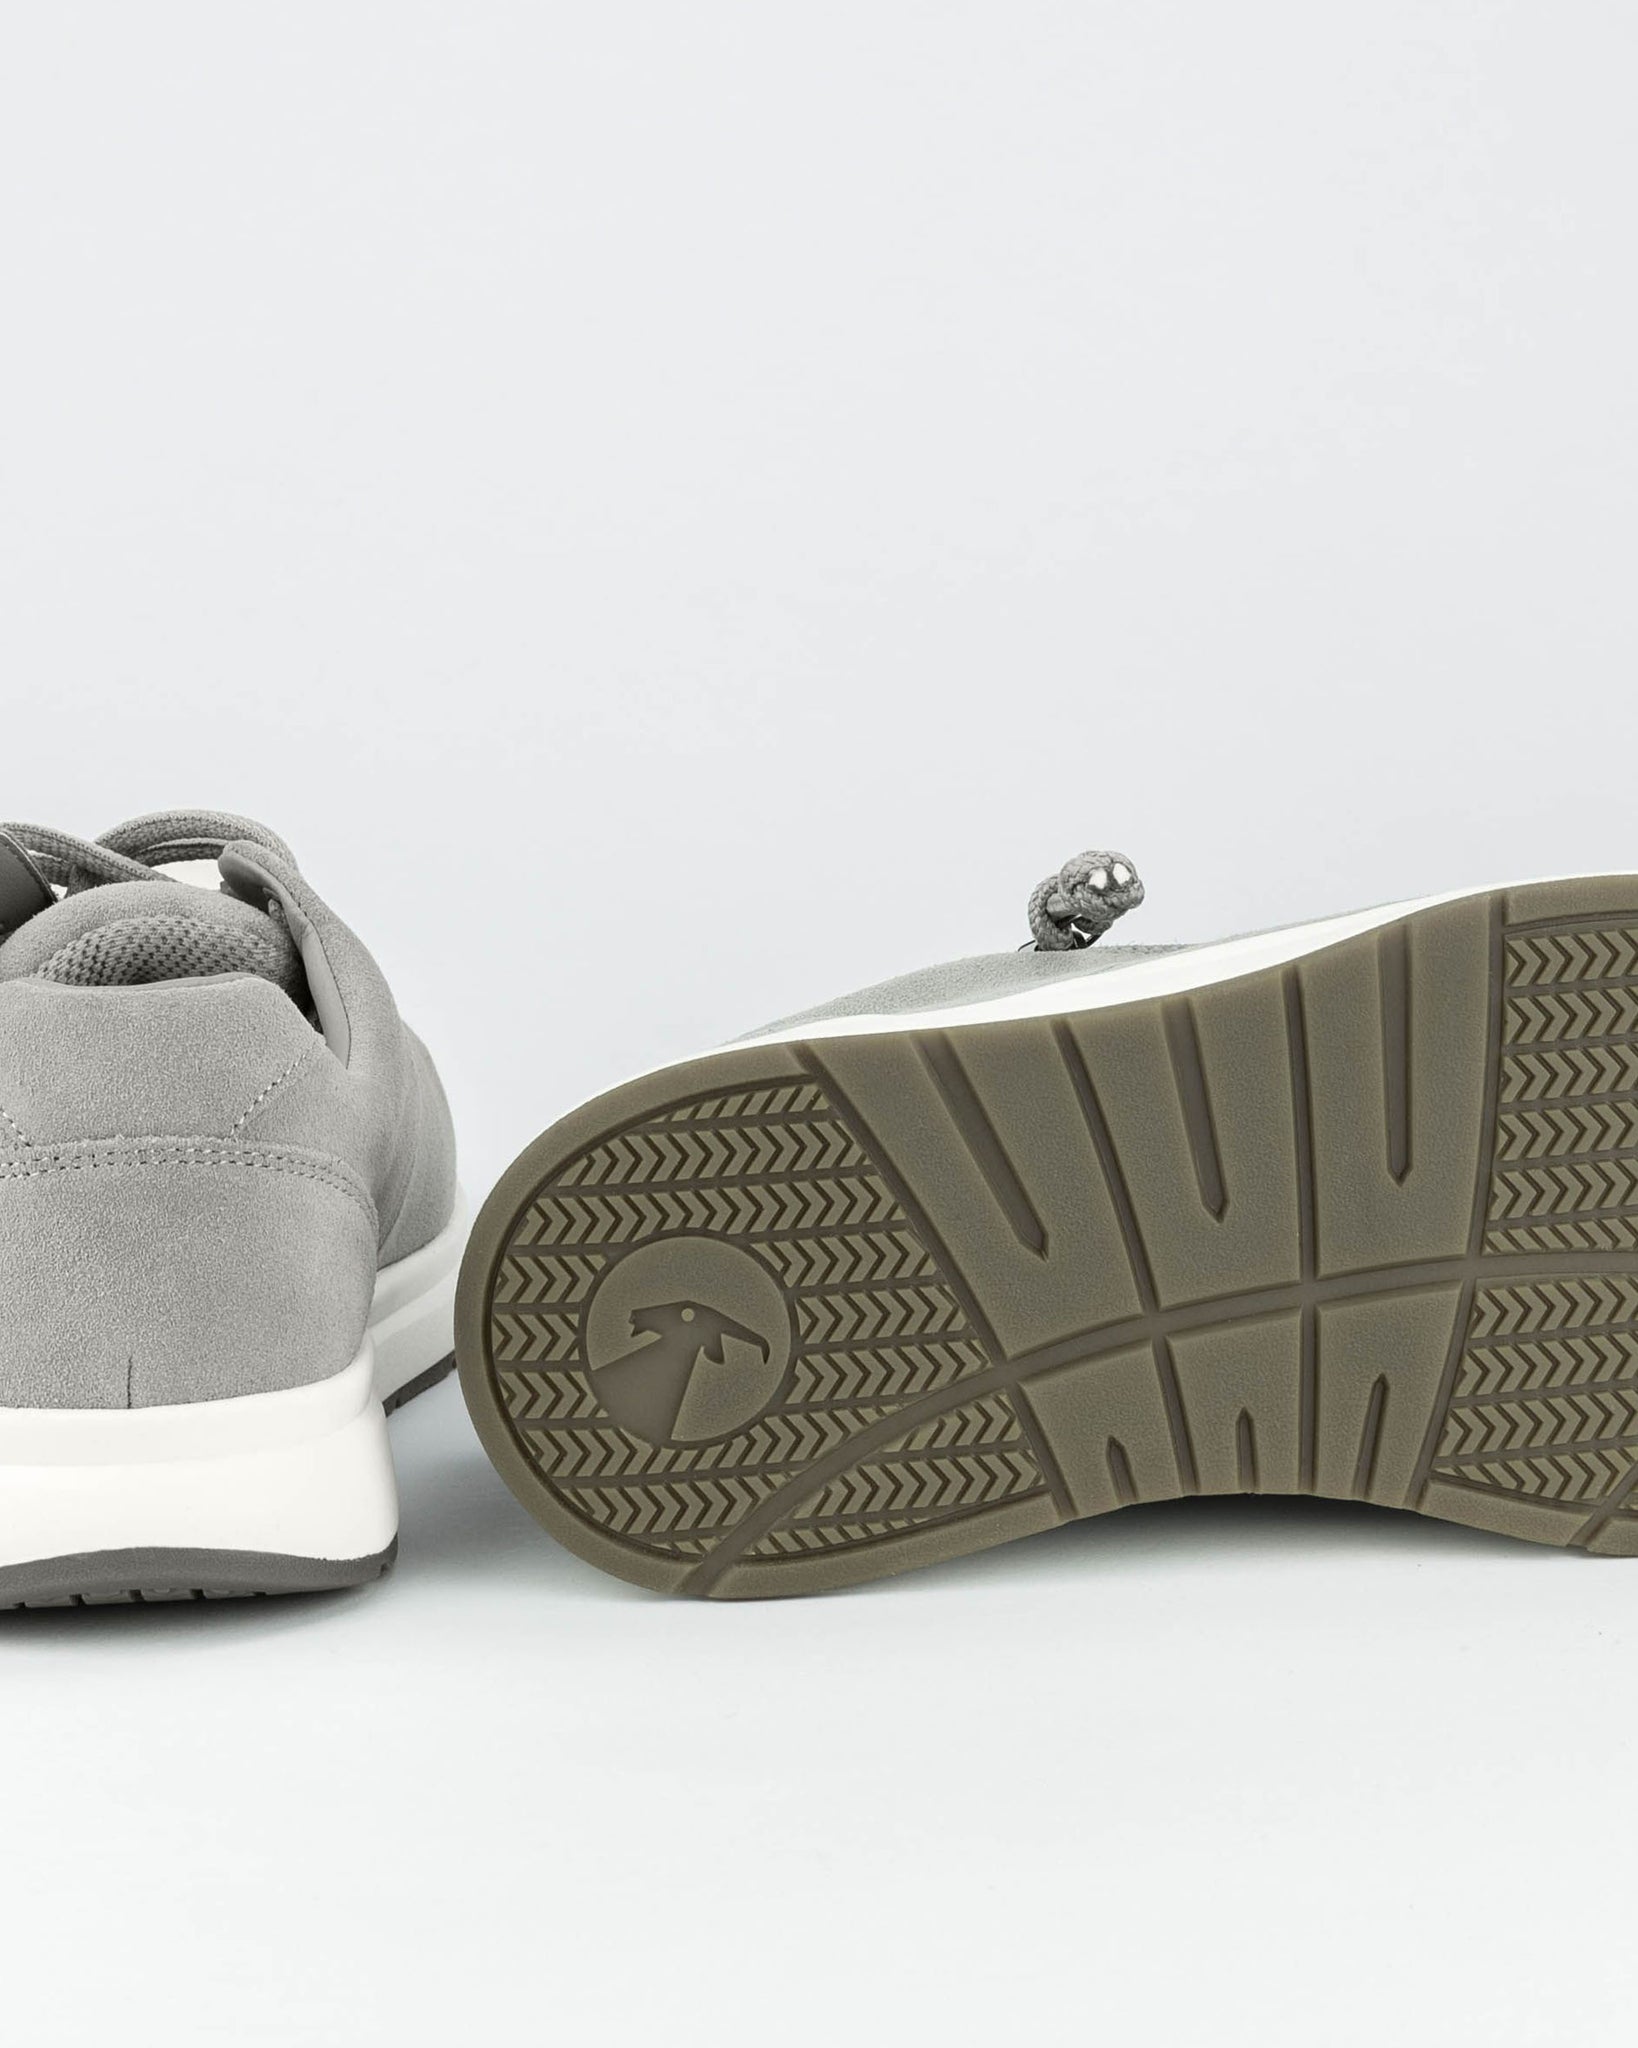 Comfort Sneaker (Women) - Grey Suede